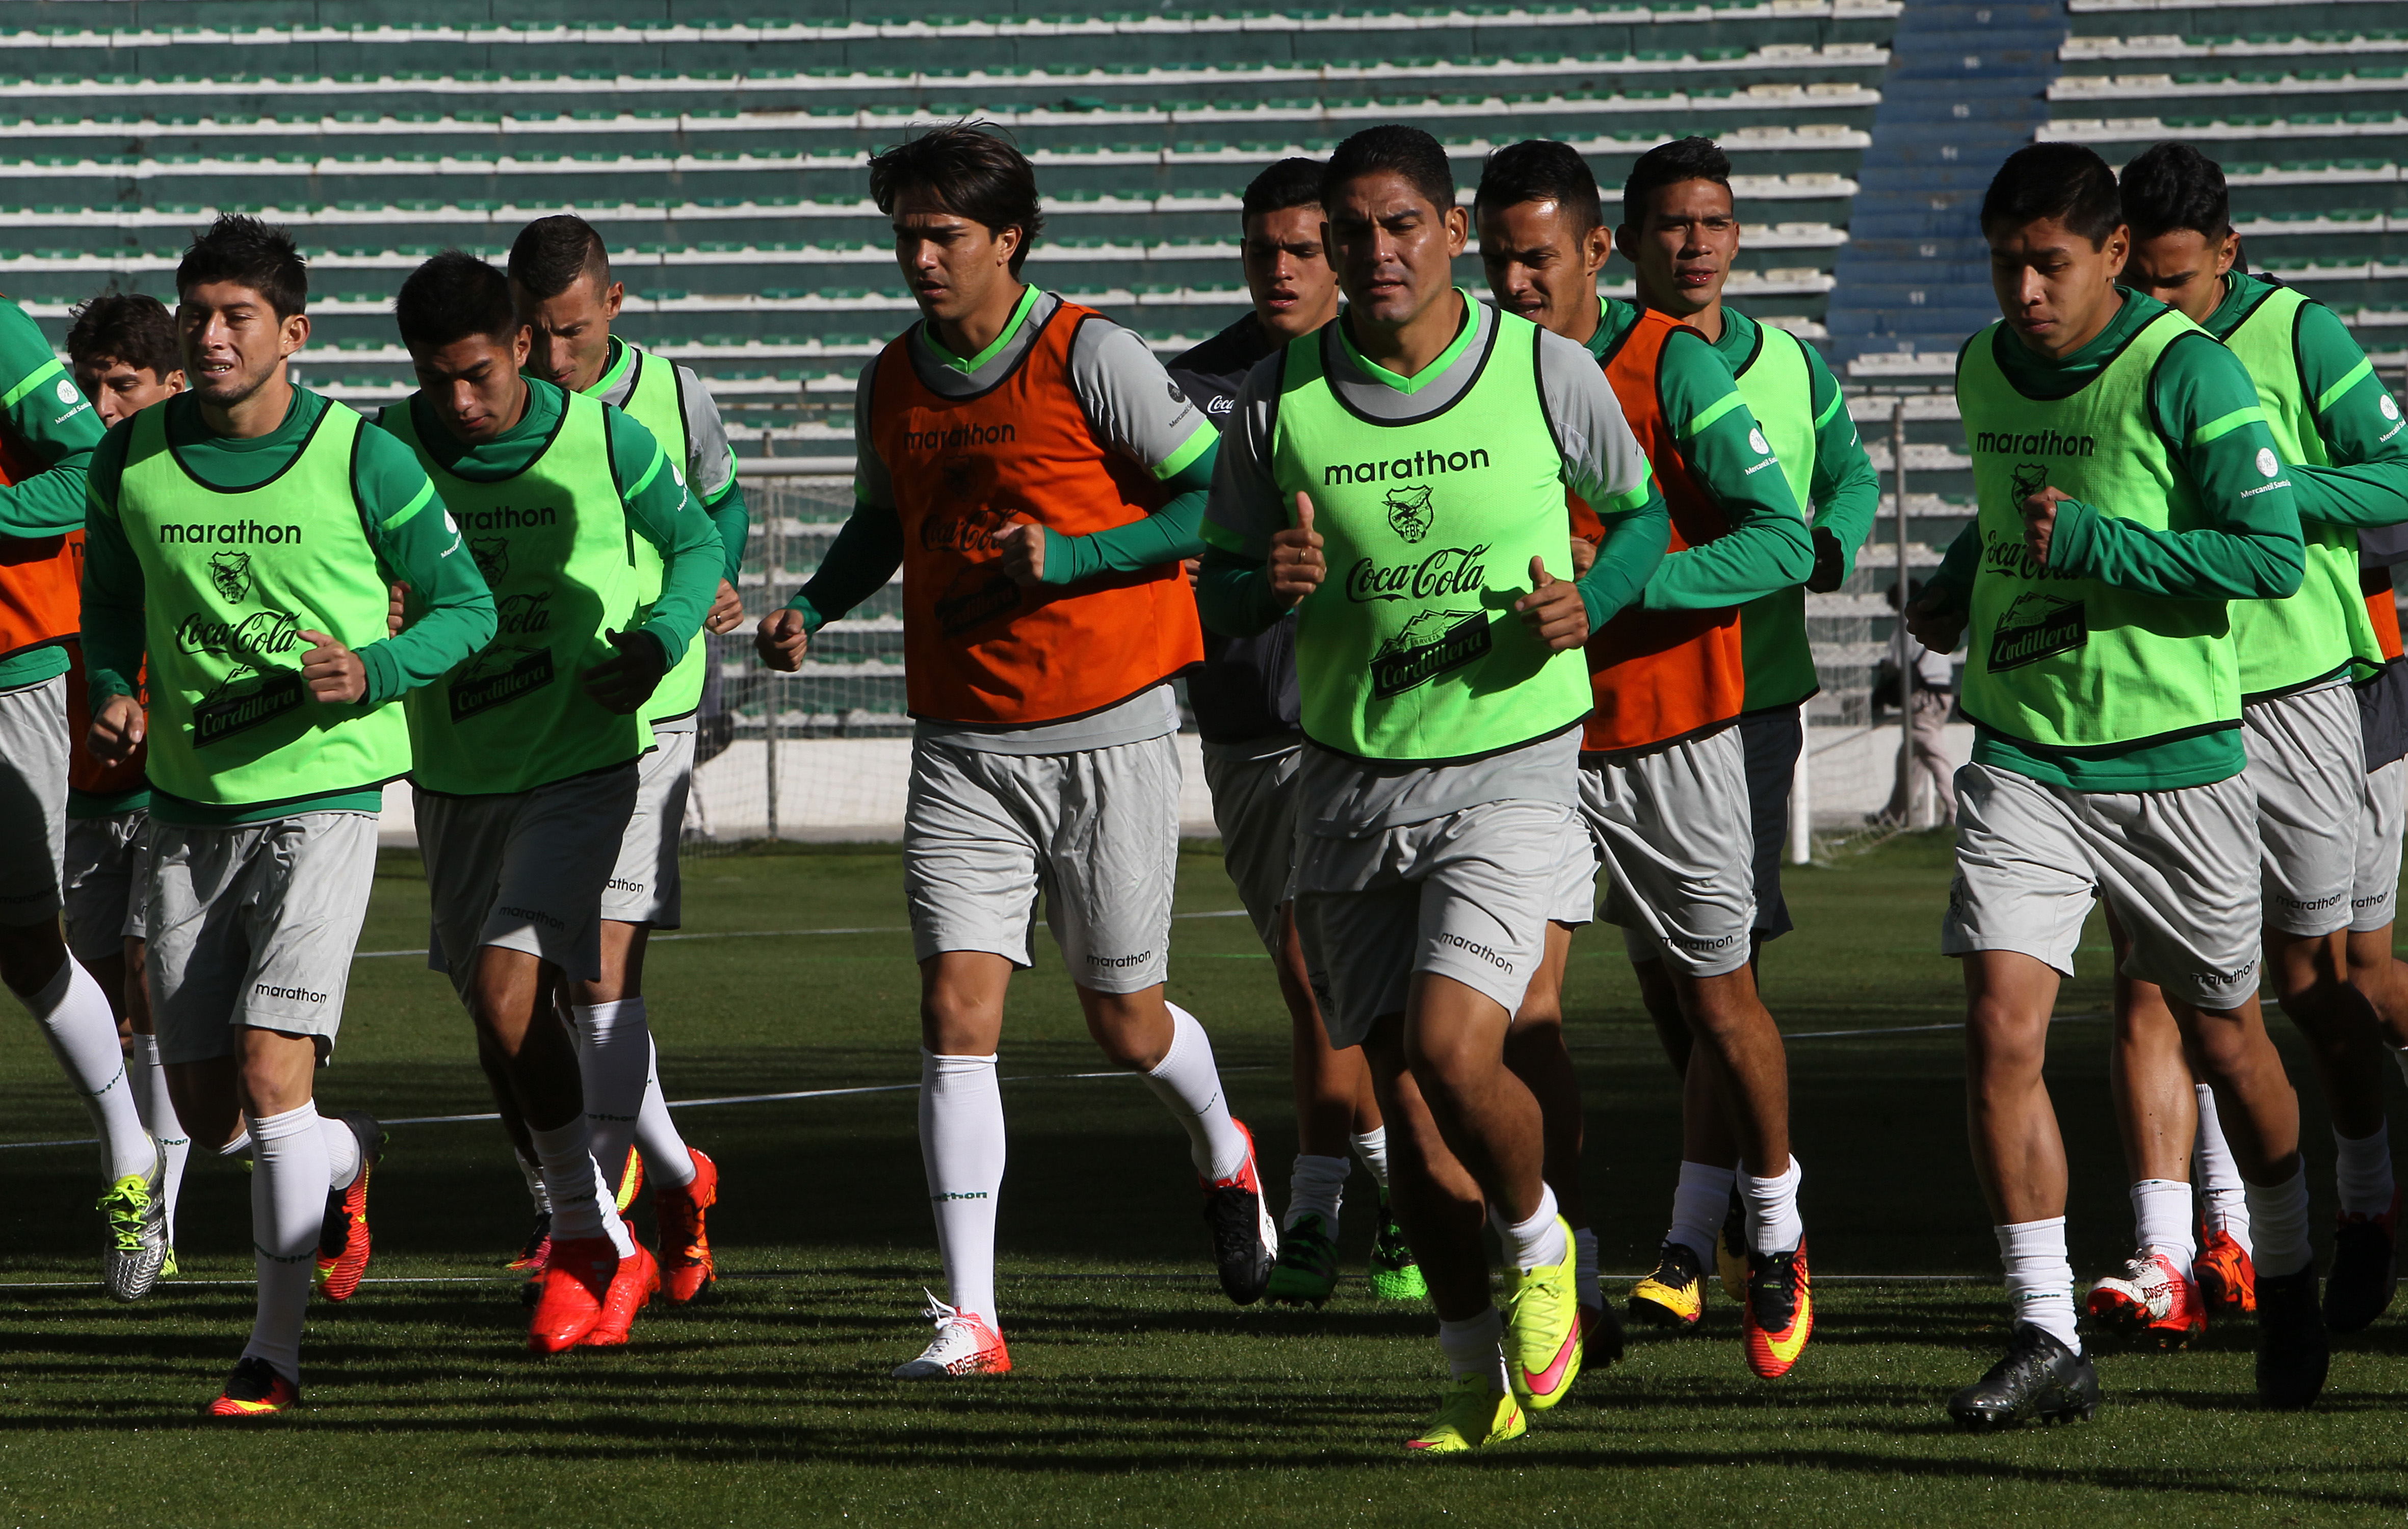 El equipo boliviano superó 1-0 a los centroamericanos en el primer encuentro, disputado en Managua, y después 3-2 en Yacuiba, Bolivia.